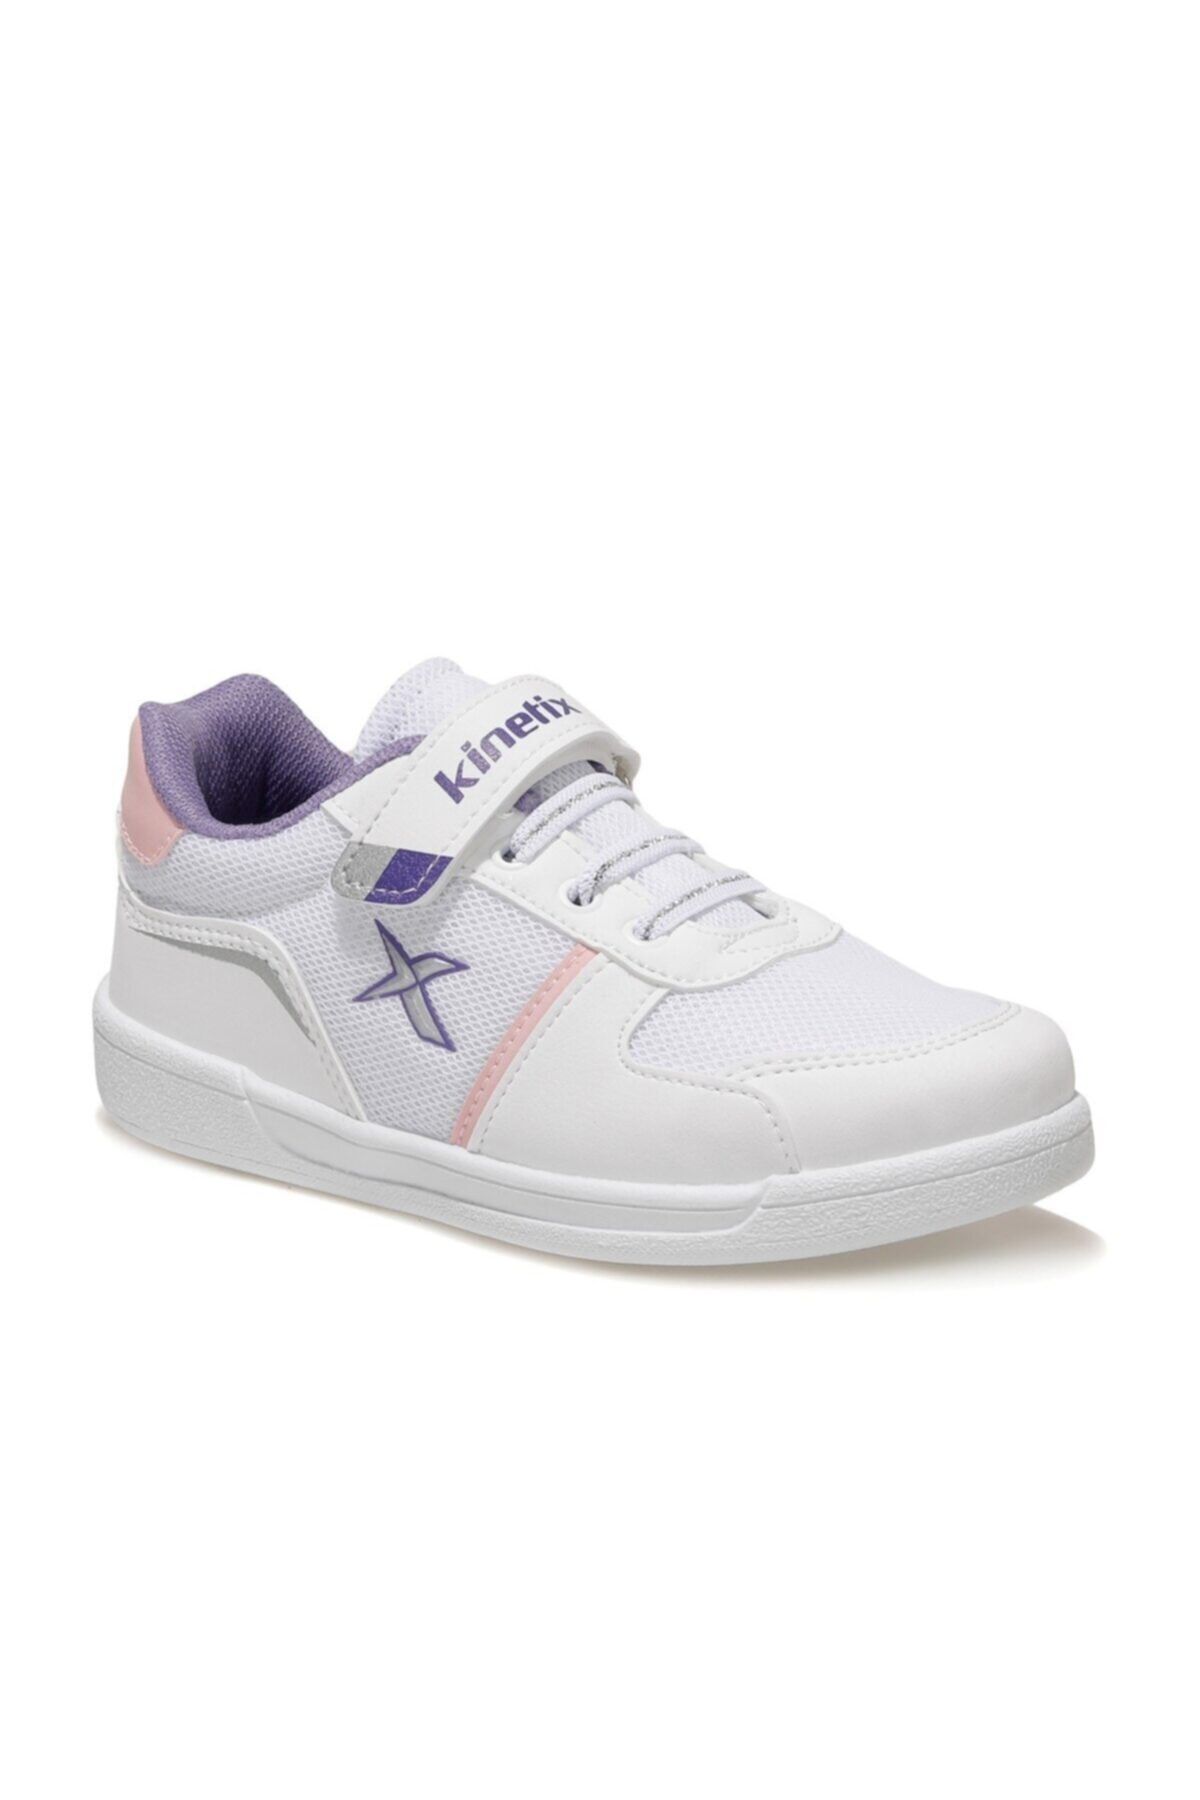 Kinetix KREJA 1FX Beyaz Kız Çocuk Sneaker Ayakkabı 100585194